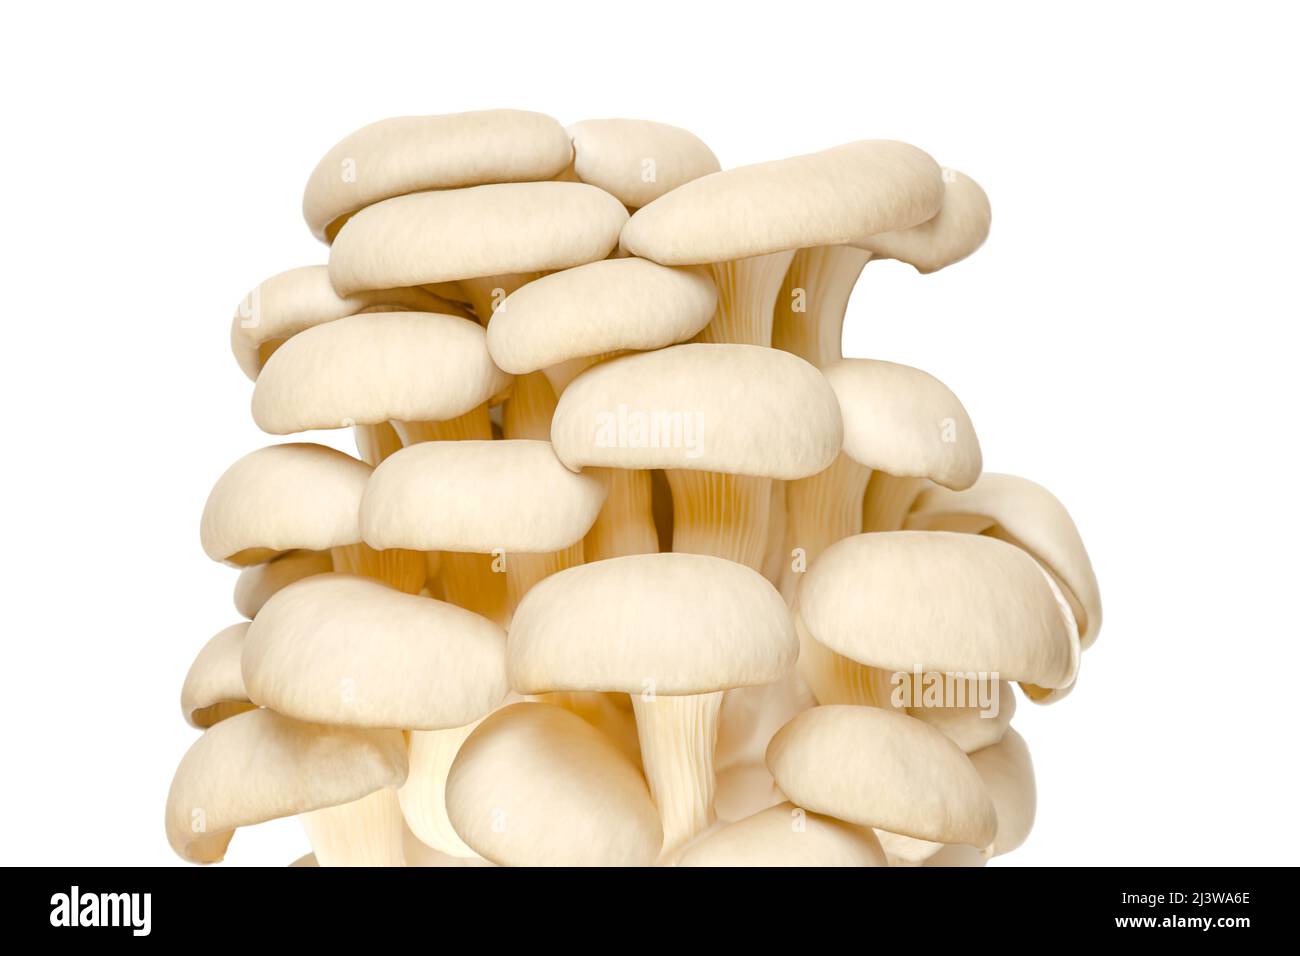 Gruppo di funghi di ostriche fresche, vista frontale. Pleurotus, noto anche come abalone o fungo di albero. Uno dei funghi più coltivati e consumati. Foto Stock